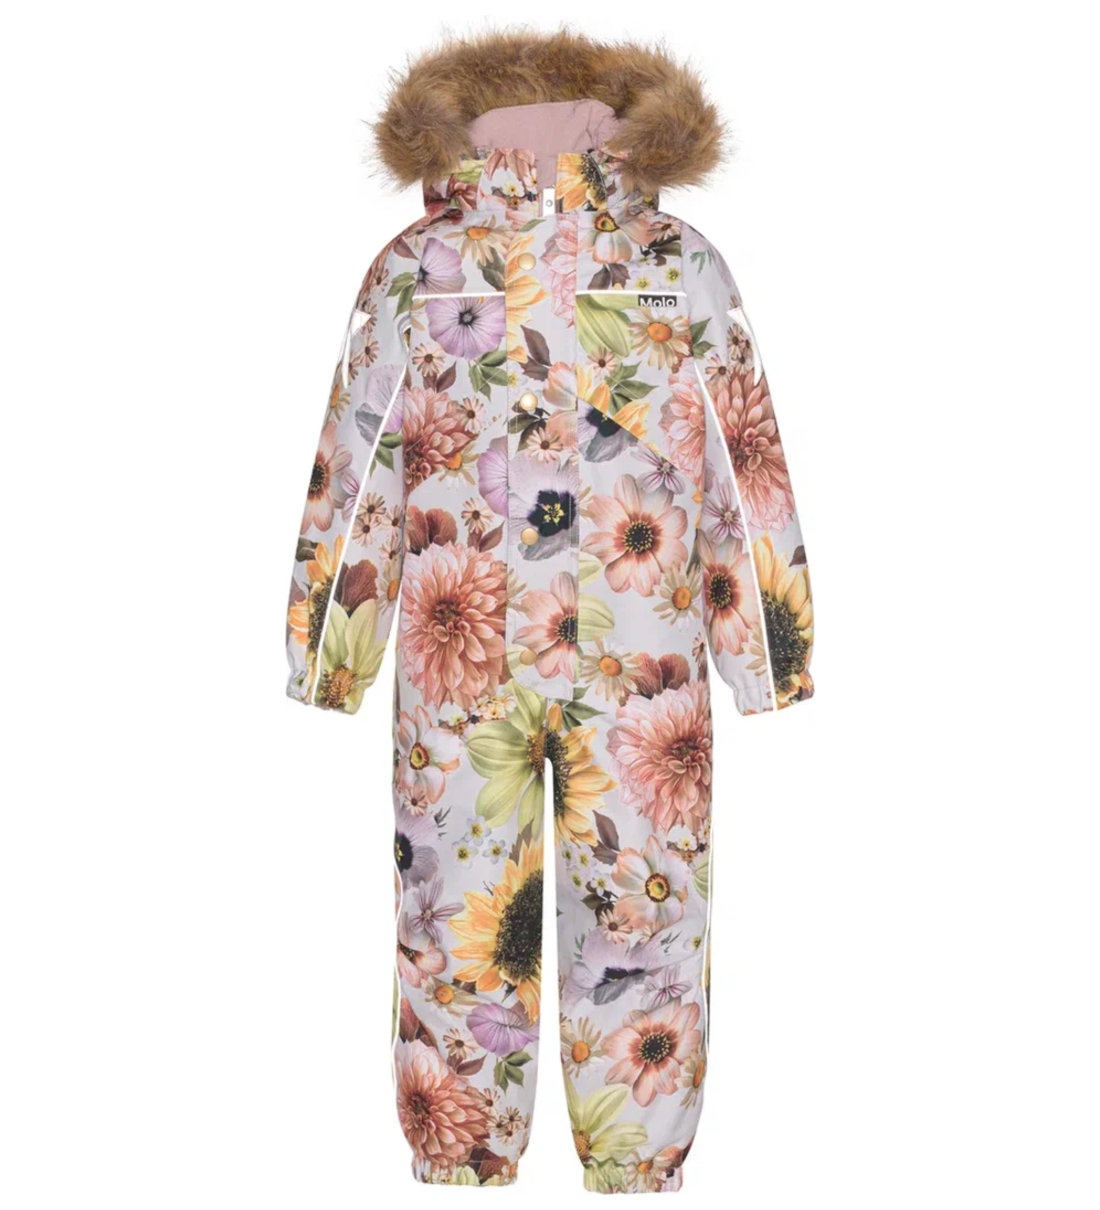 Комбинезон детский Molo Polaris Fur, цветочный, 128